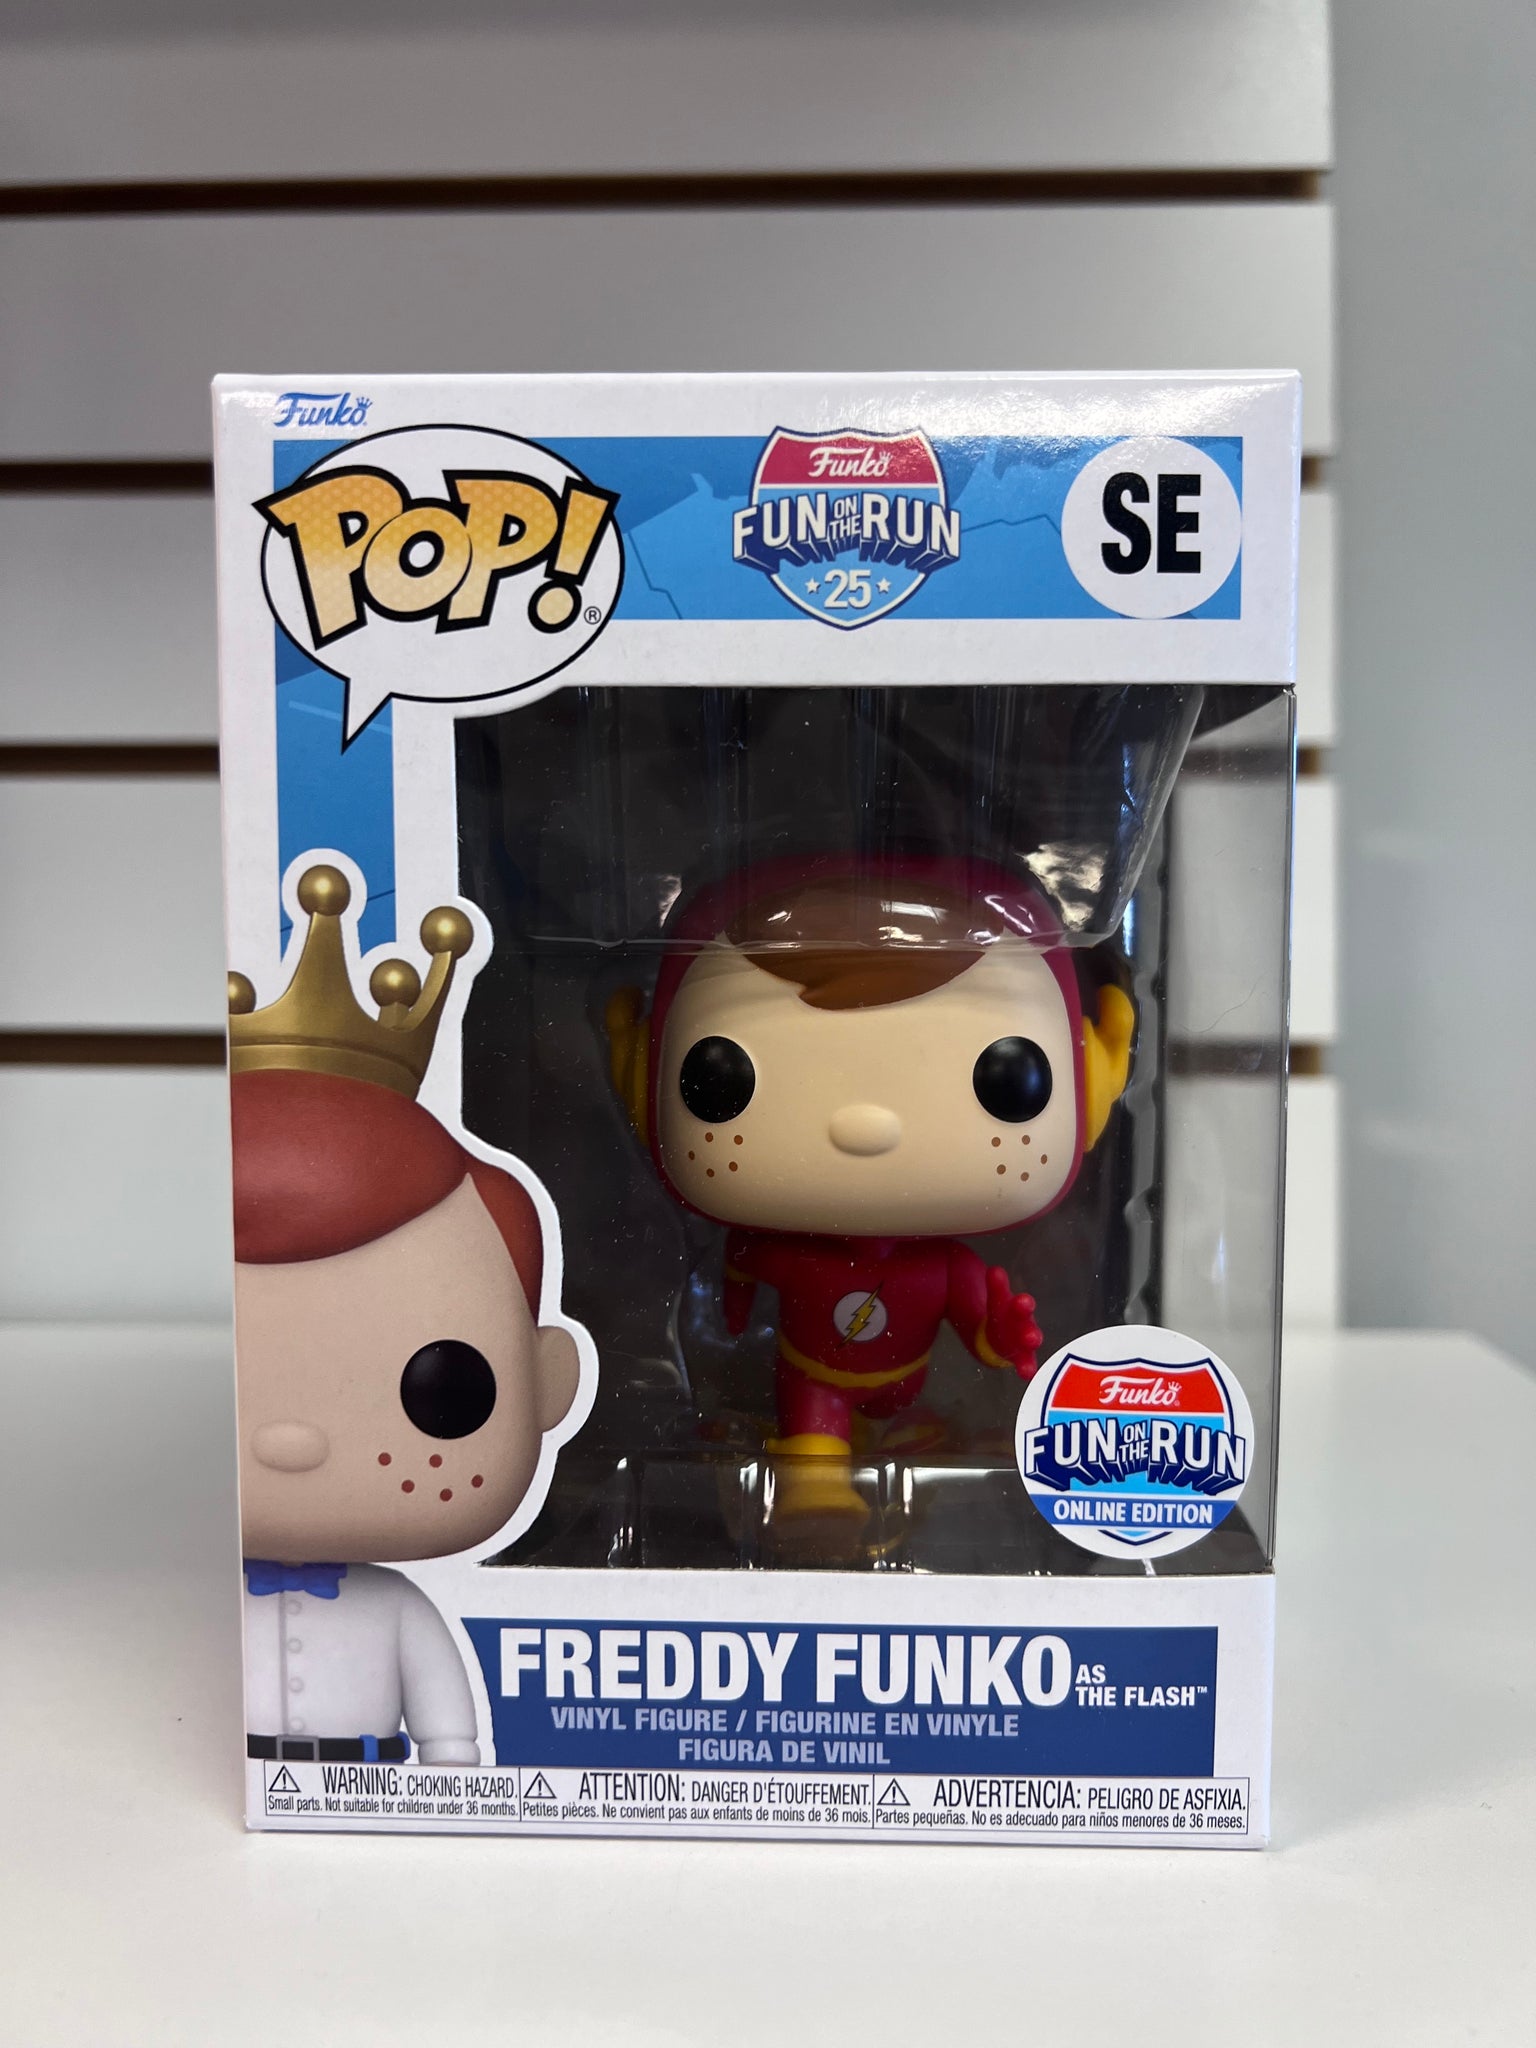 Pop! Fun on the Run Freddy Funko